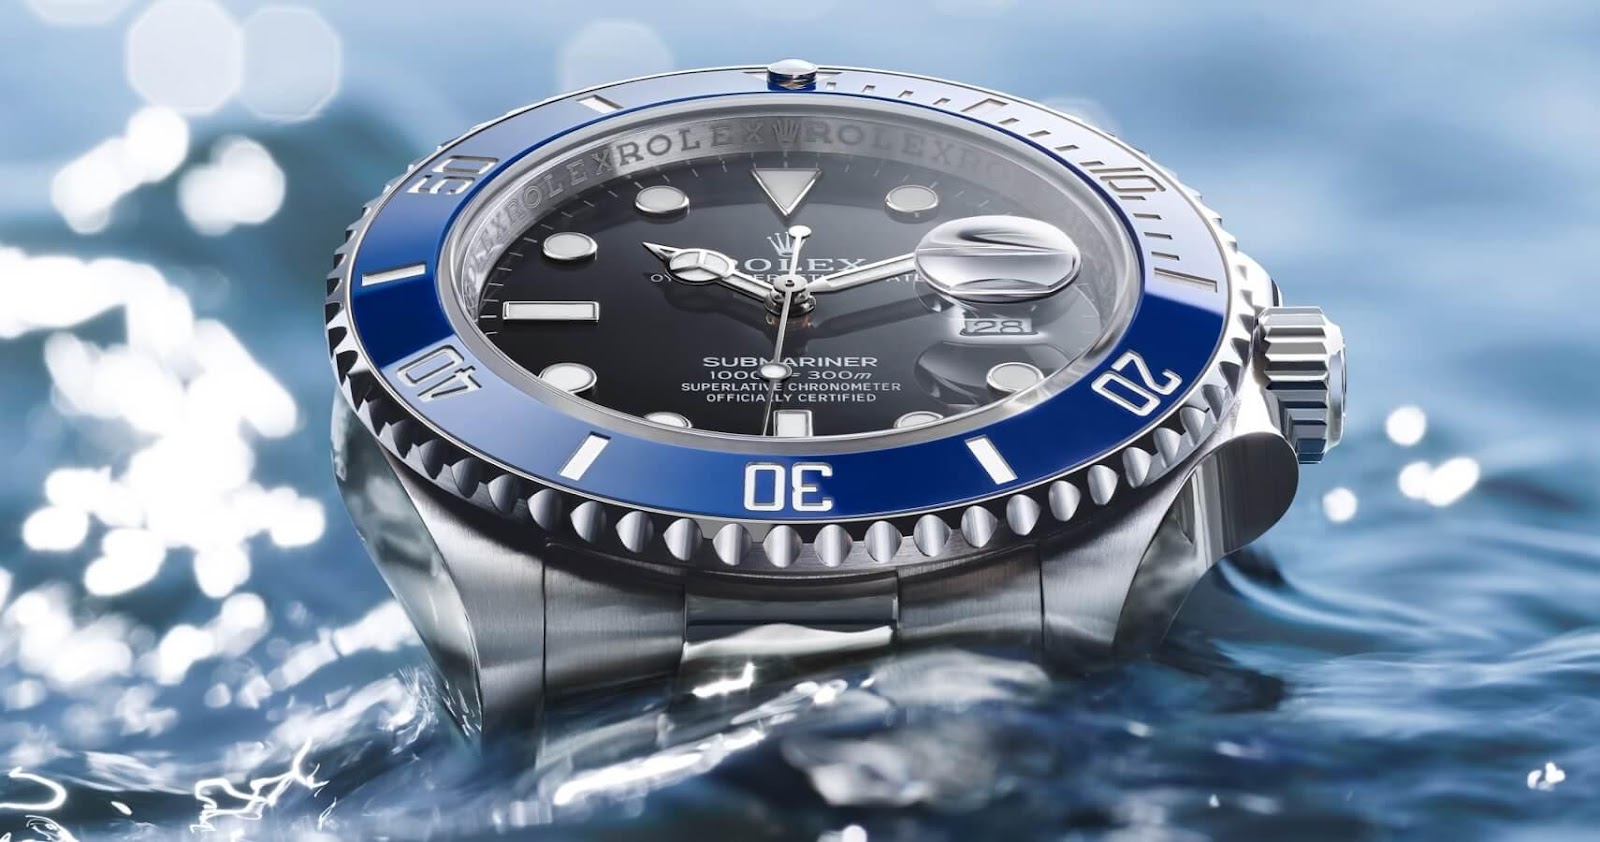 Duyên kỳ ngộ: Hơn 4 năm thất lạc dưới đáy biển, chiếc đồng hồ Rolex giá gần 500 triệu đồng lại quay về với chủ cũ như một định mệnh - Ảnh 2.